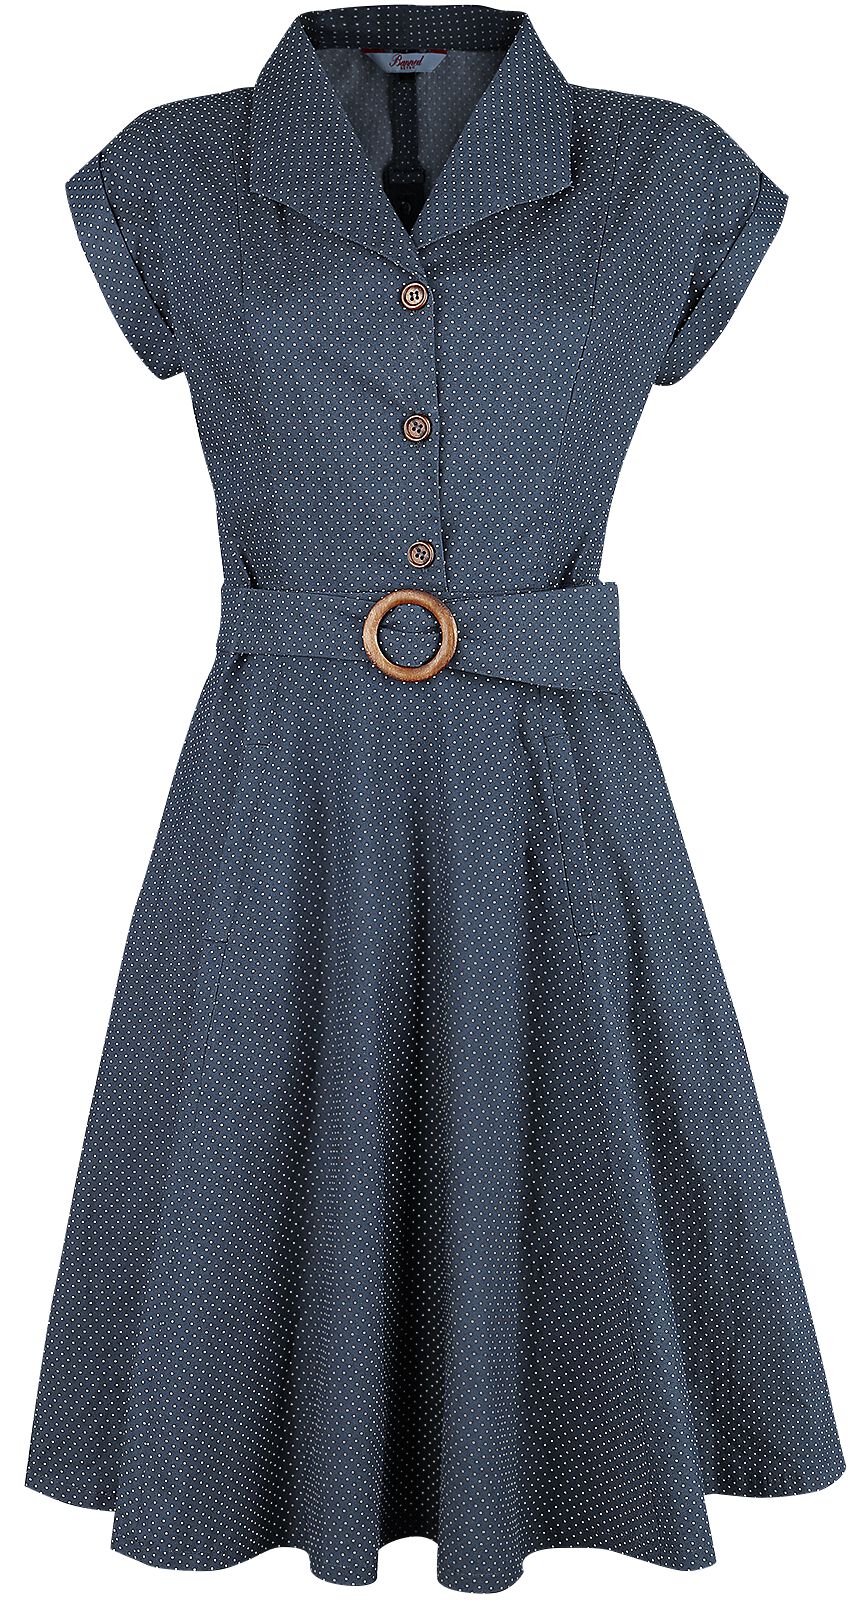 Banned Retro - Rockabilly Kleid knielang - Spot Perfection Fit & Flare Dress - XS bis 4XL - für Damen - Größe XXL - navy